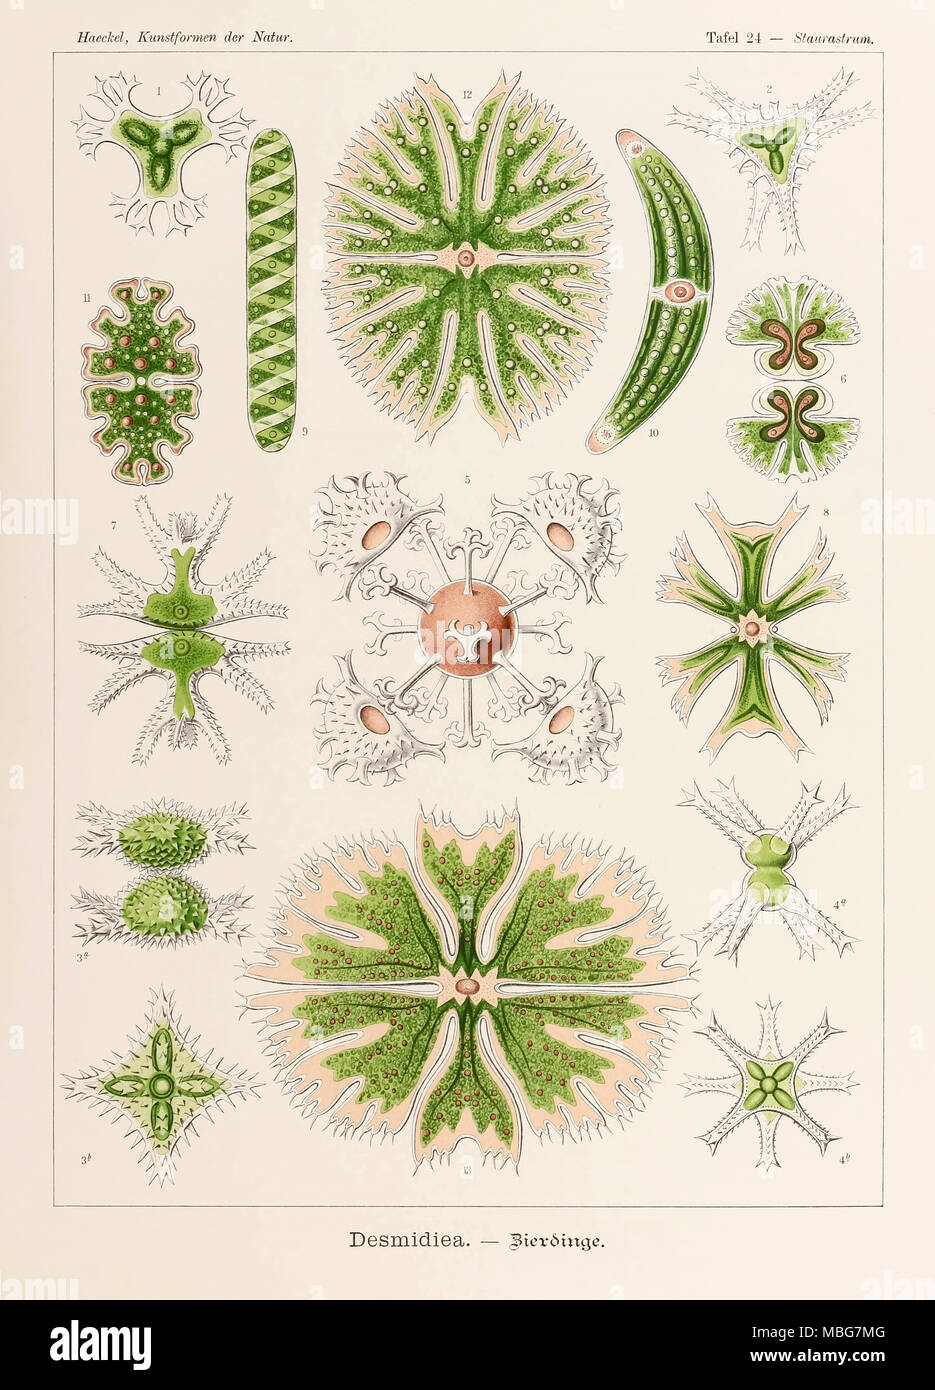 24 Plaque de Desmidiea Staurastrum 'Kunstformen der Natur' (formes d'art dans la Nature) illustrée par Ernst Haeckel (1834-1919). Voir plus d'informations ci-dessous. Banque D'Images